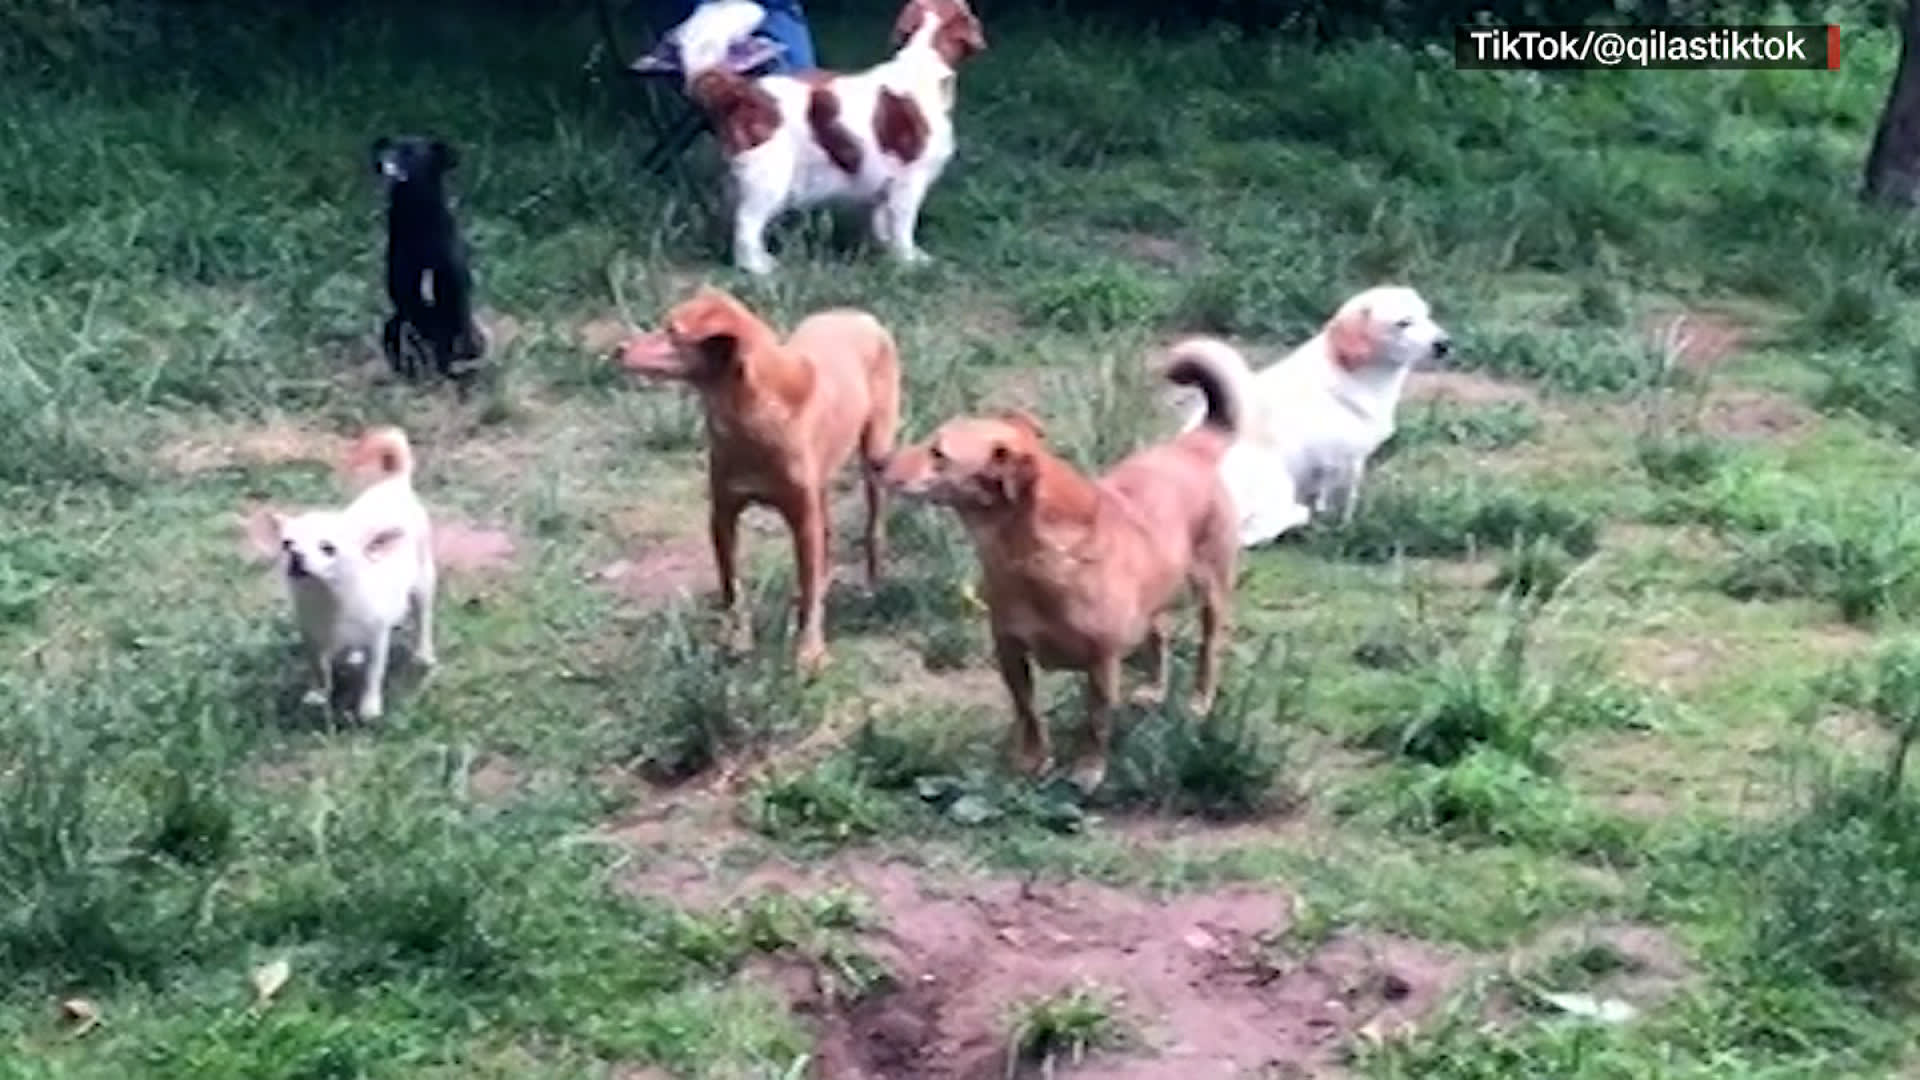 تحنطوا مكانهم.. فيديو للقاء دام ساعة كاملة بين كلاب انطوائية يلقى رواجًا كبيرًا